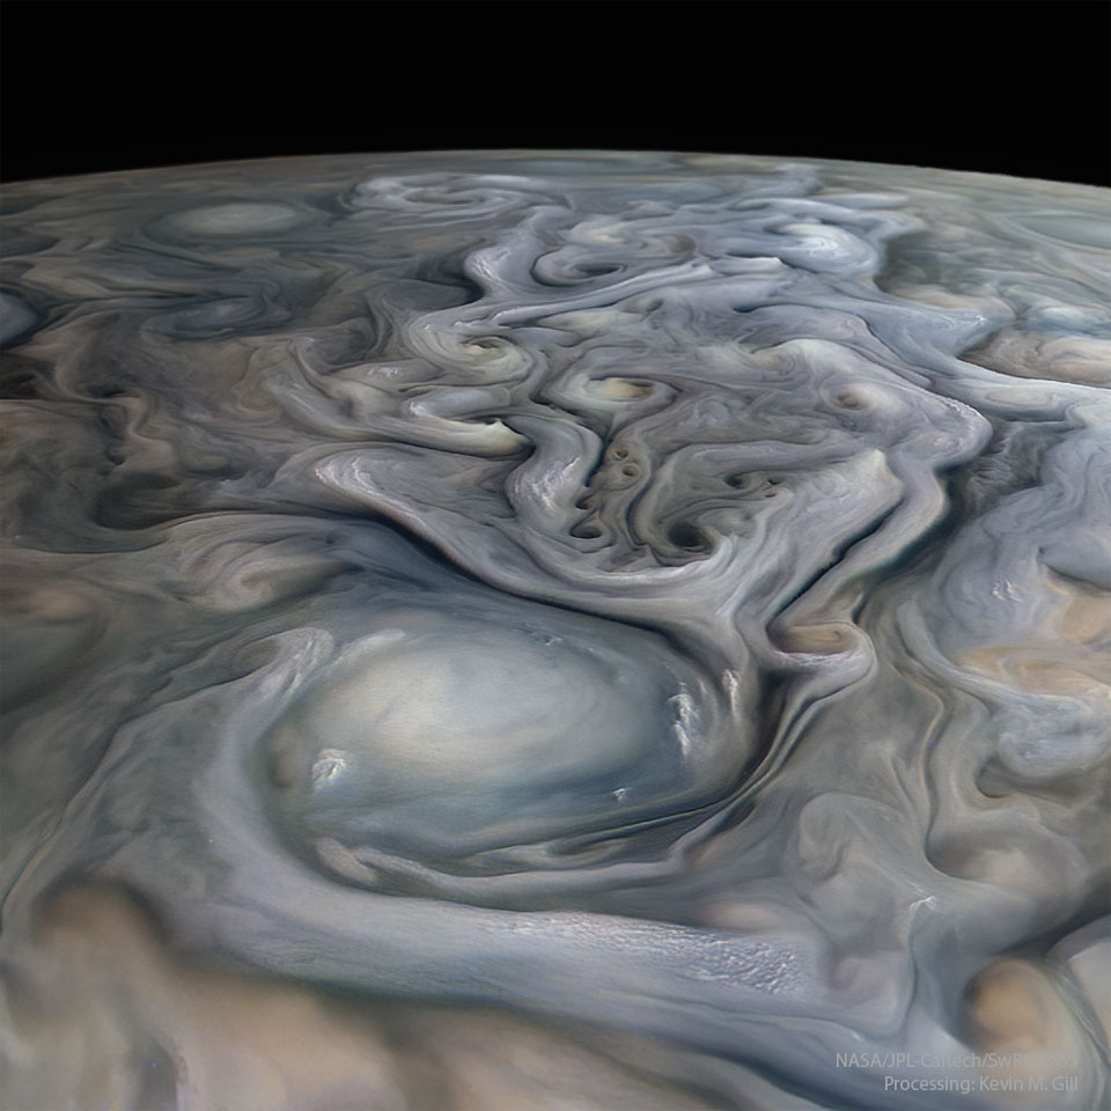 Jupiter's swirls